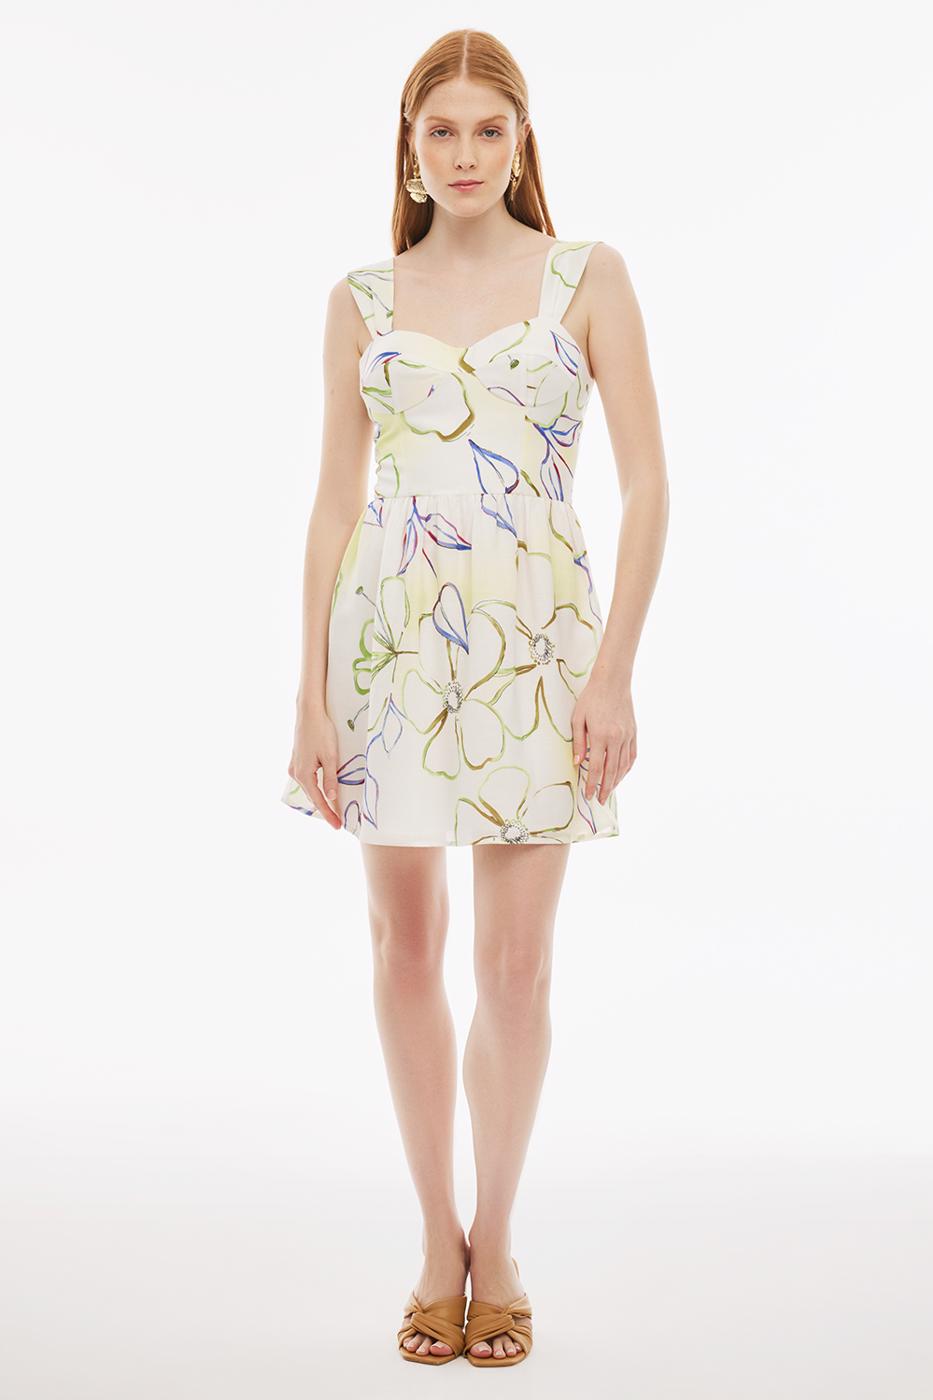 Bayan ÇOK RENKLİ Marles Regular Fit Çiçek Desenli Kısa Boy Sıfır Kol Askılı Çok Renkli Elbise